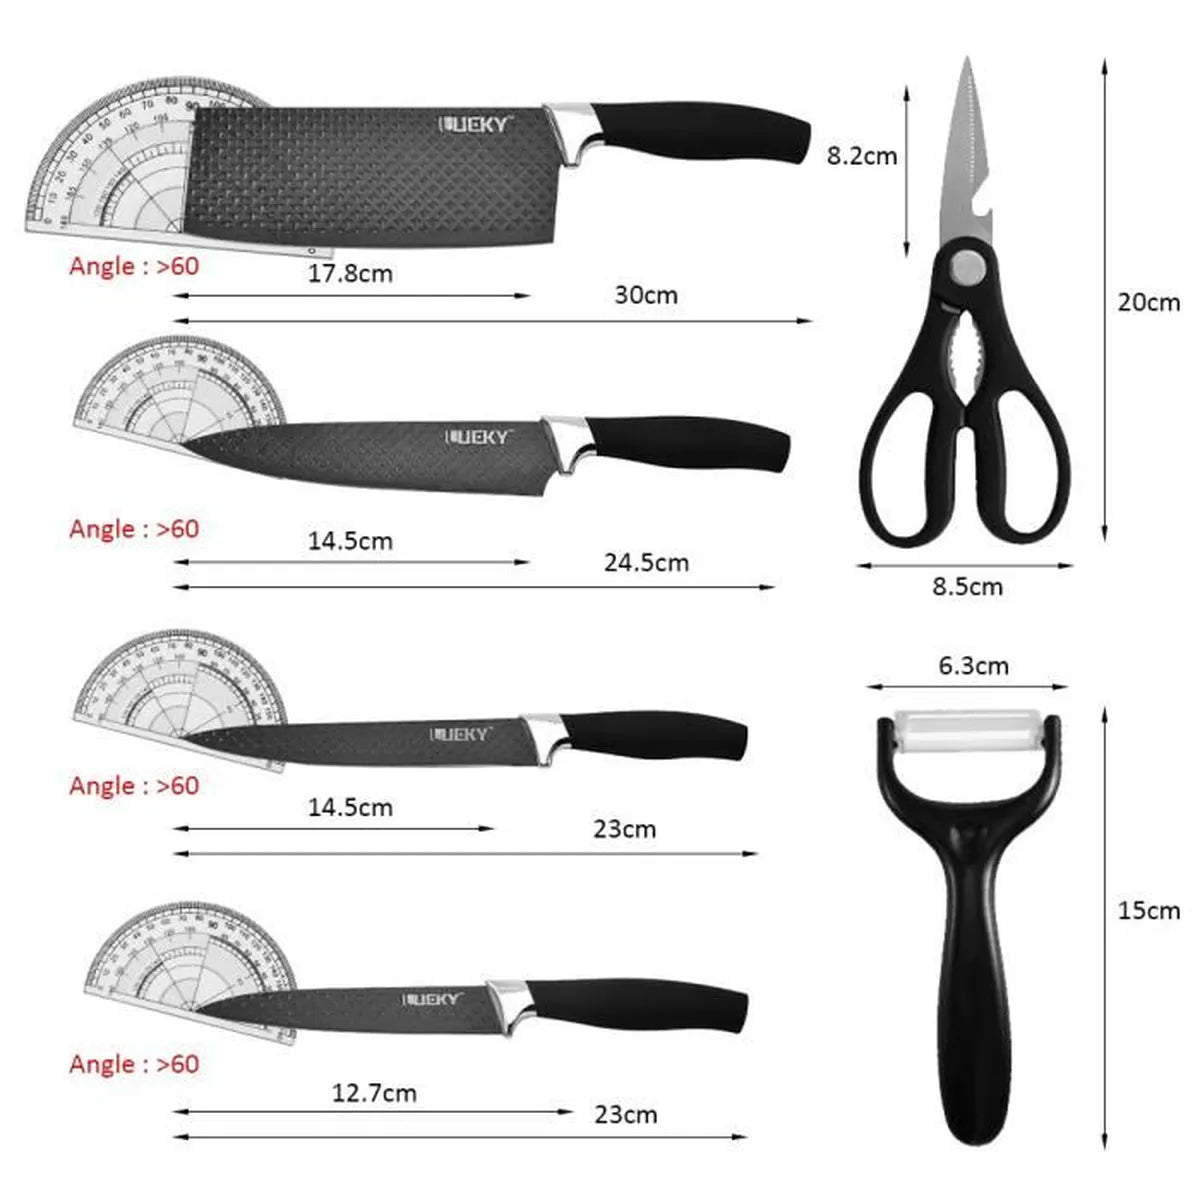 oversiktbilde over kniver og saksers lengde vinkel på skjæreblad og lengde på håndtak, alt på hvit bakgrunn